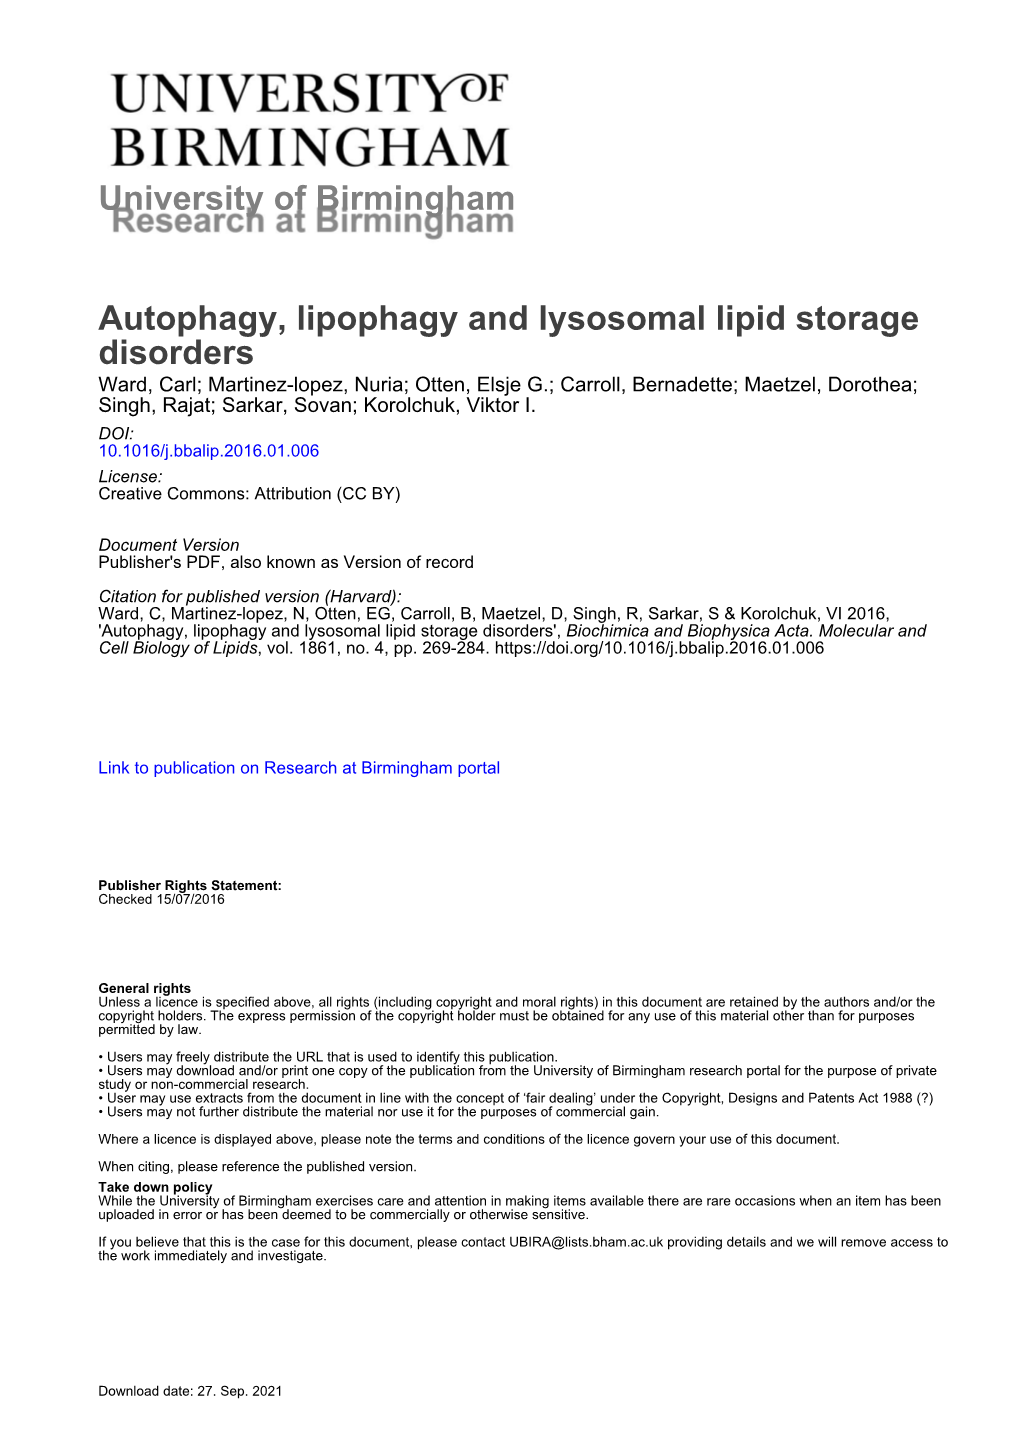 Autophagy, Lipophagy and Lysosomal Lipid Storage